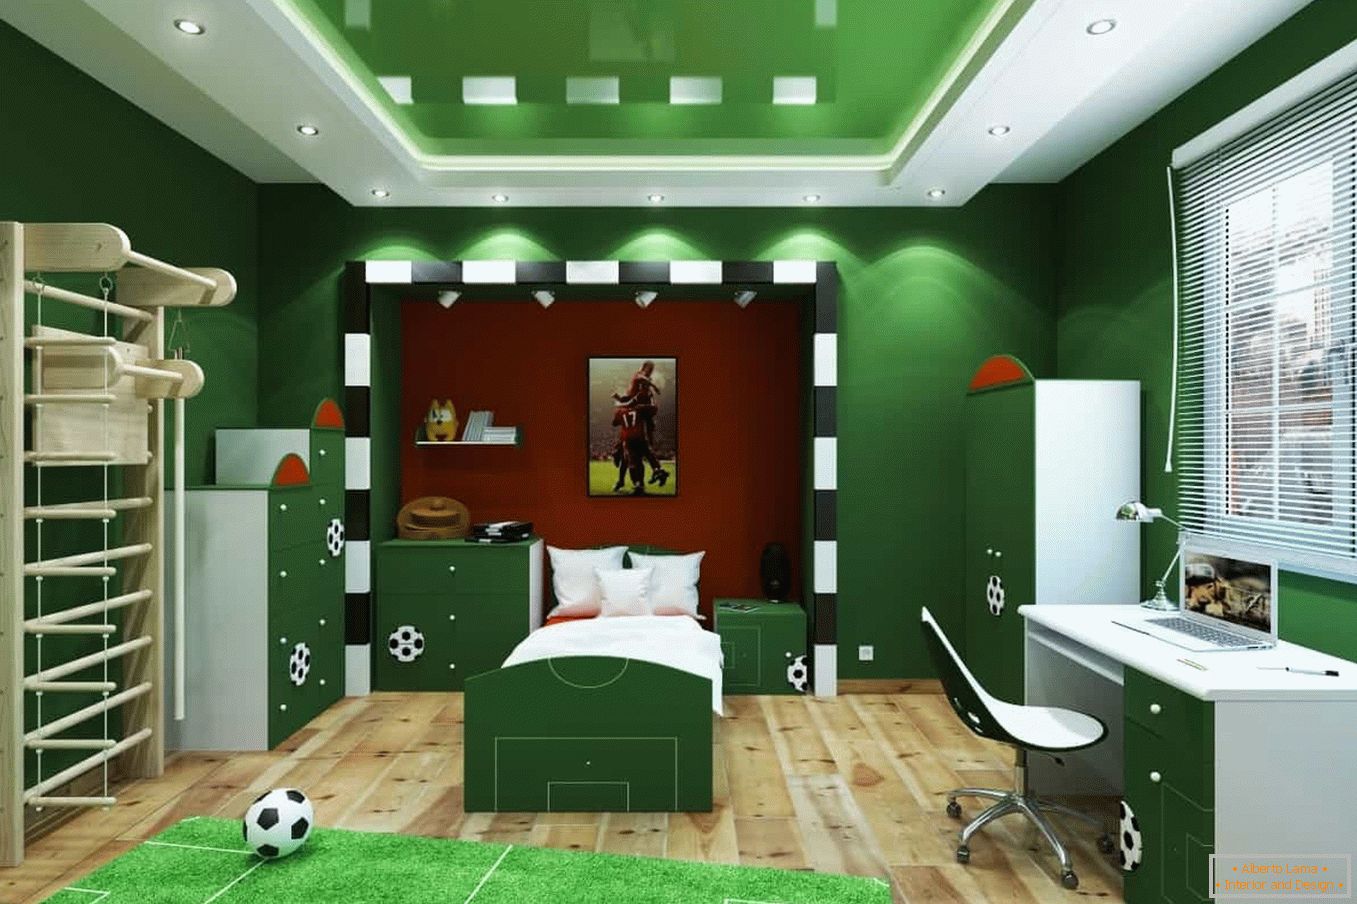 Green room - soccer field